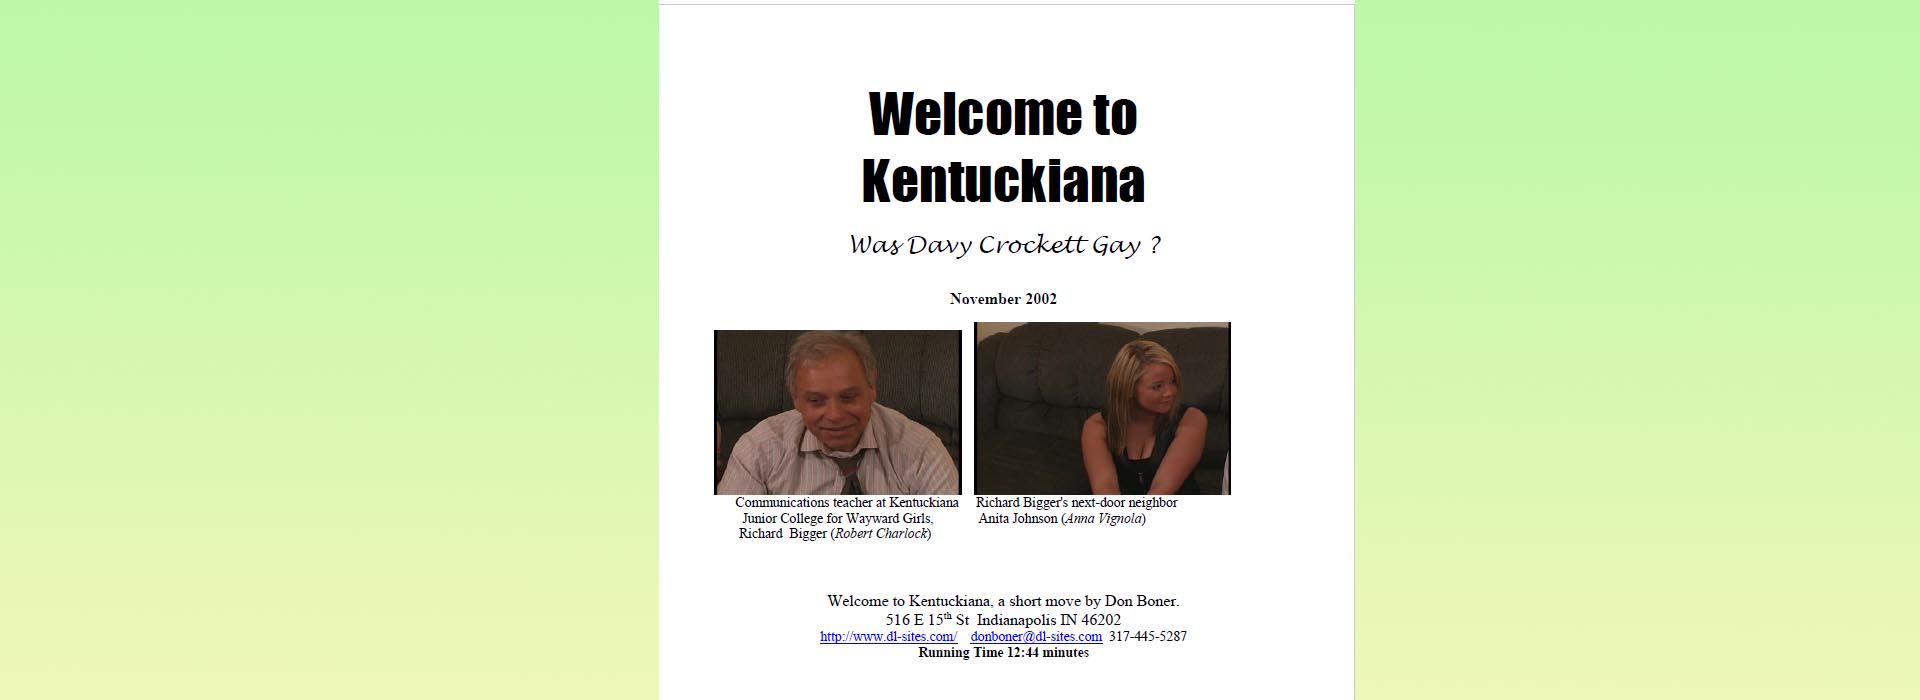 Welcome to Kentuckiana Press Kit